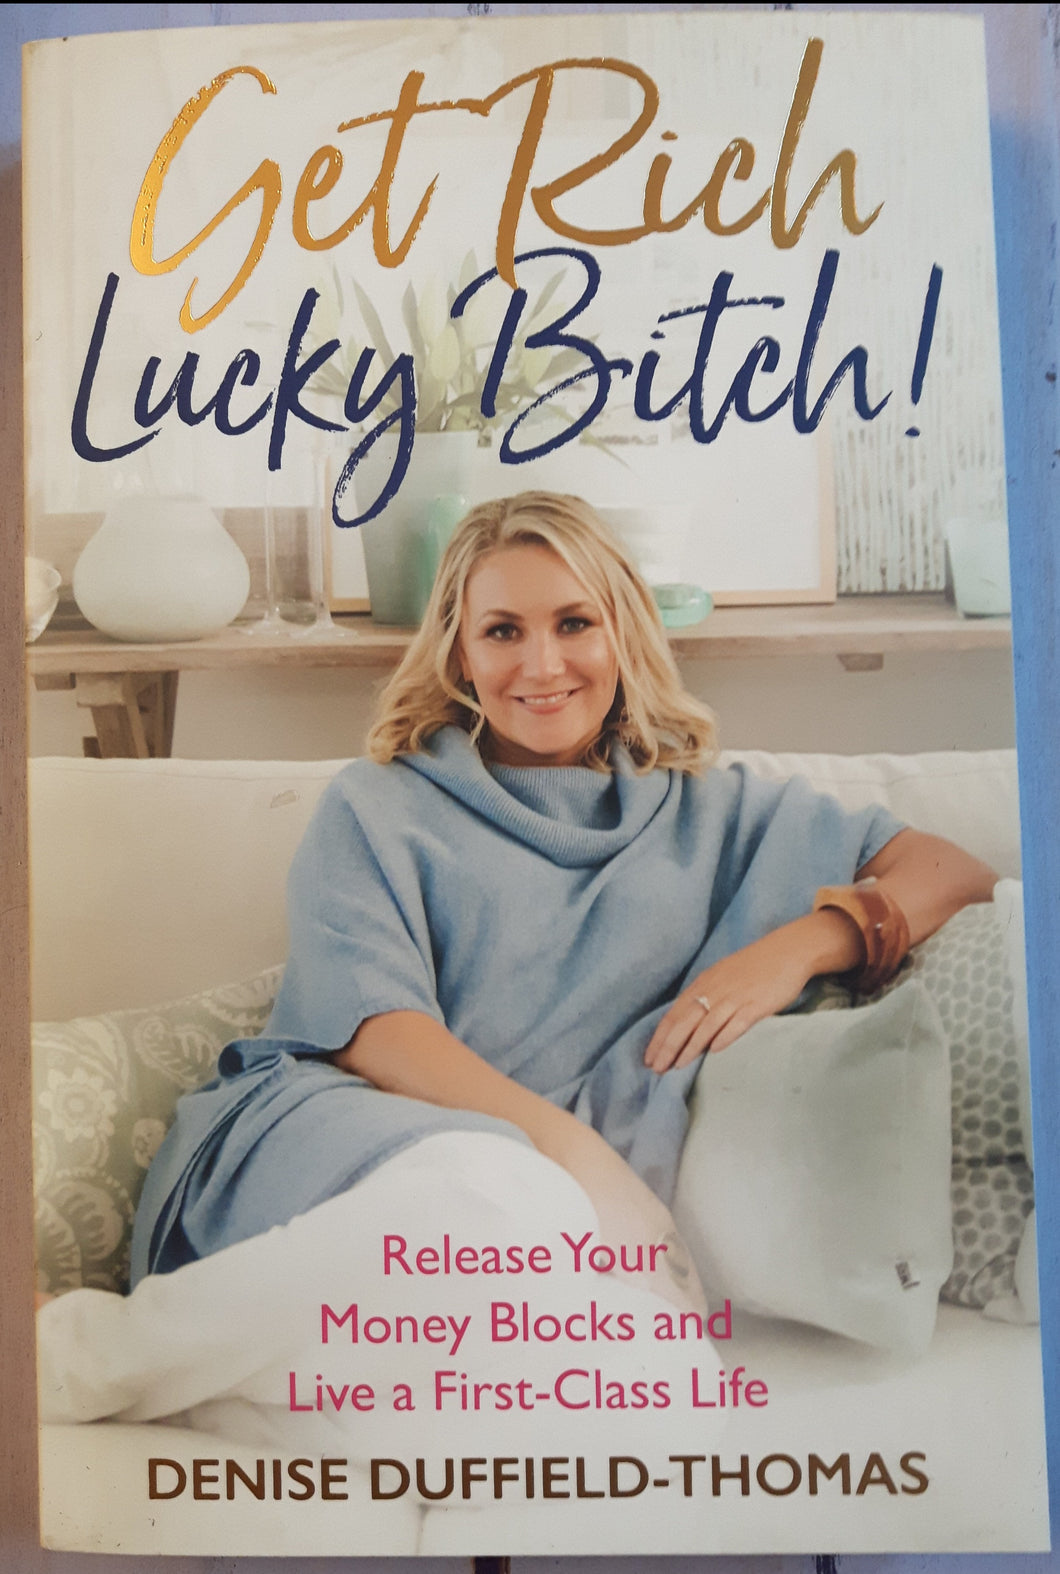 Get Rich, Lucky Bitch!